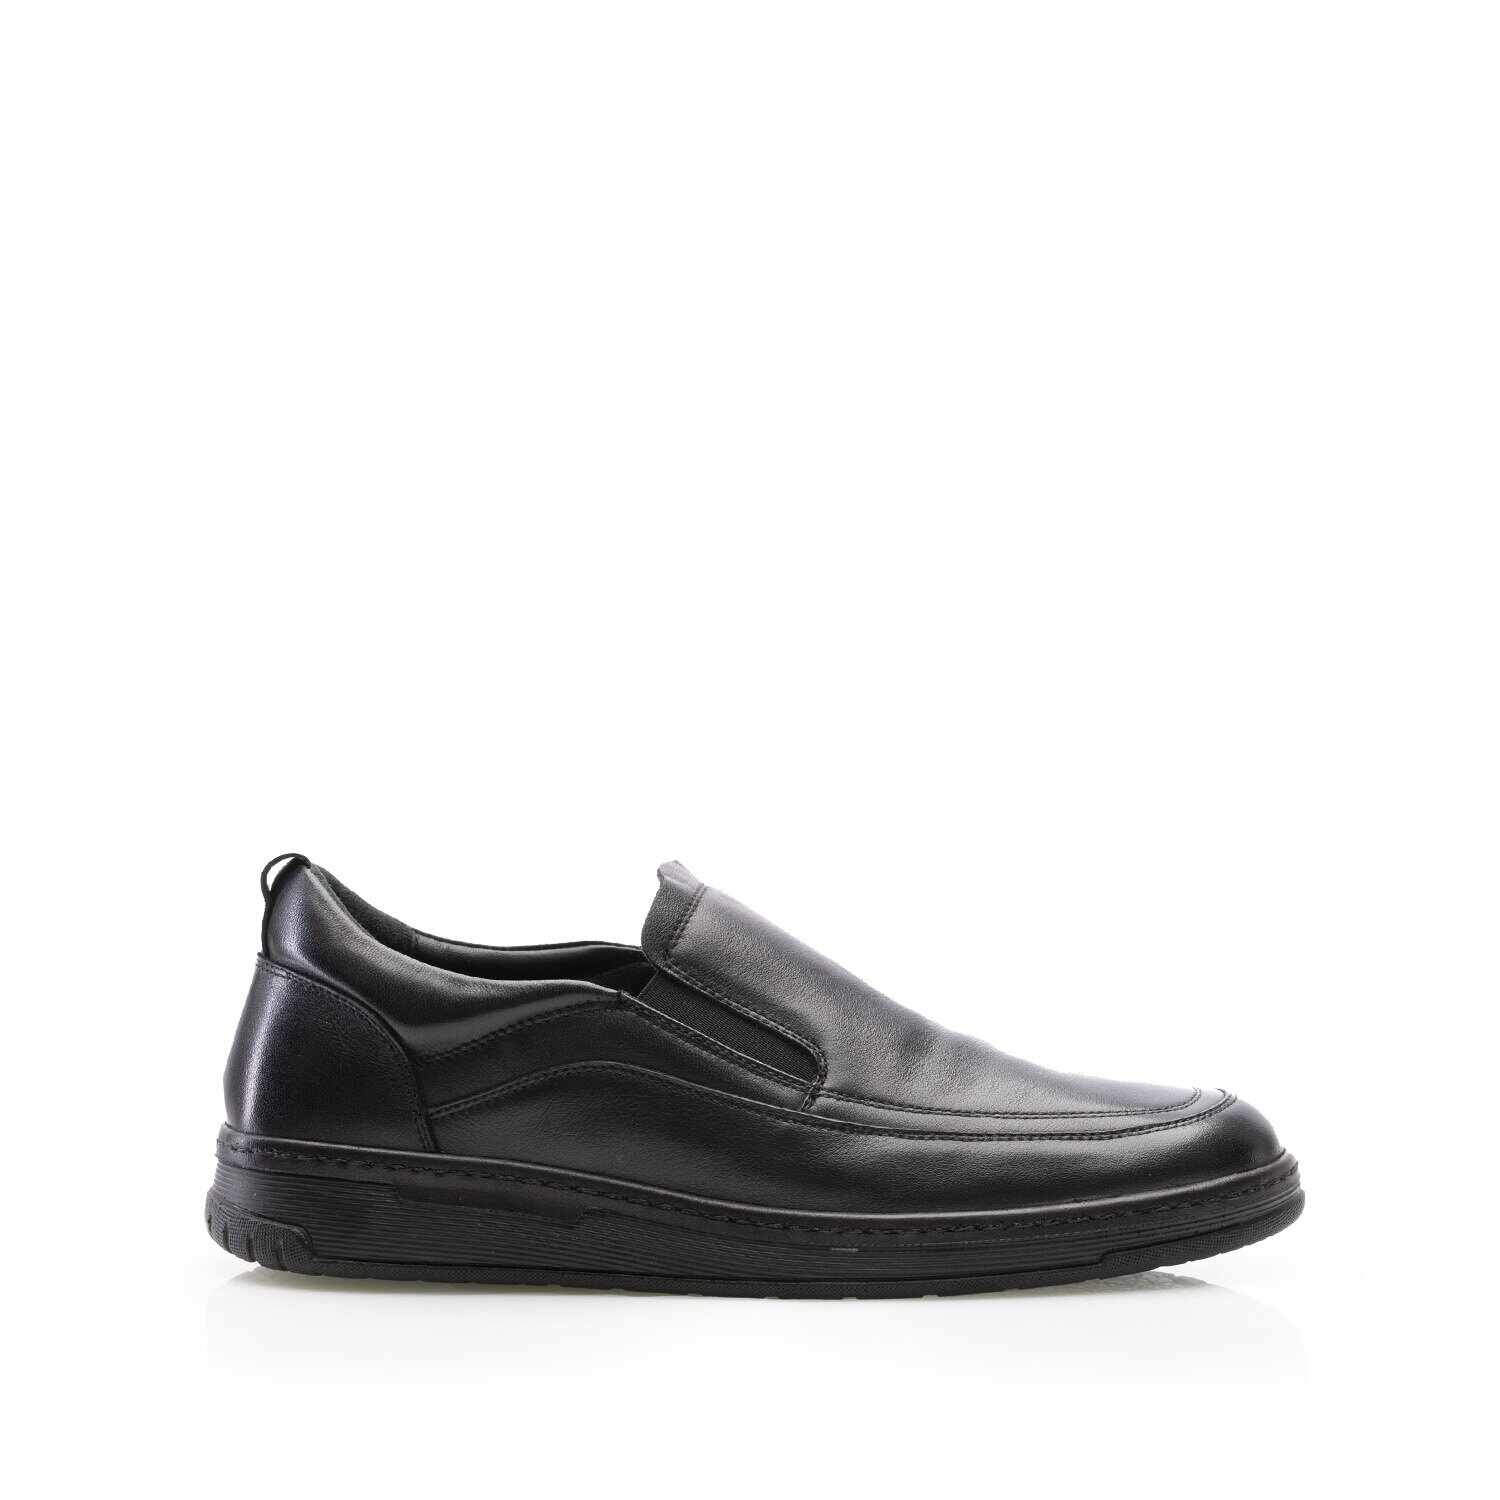 Pantofi casual bărbați din piele naturală, Leofex - Mostră 973 Negru Box